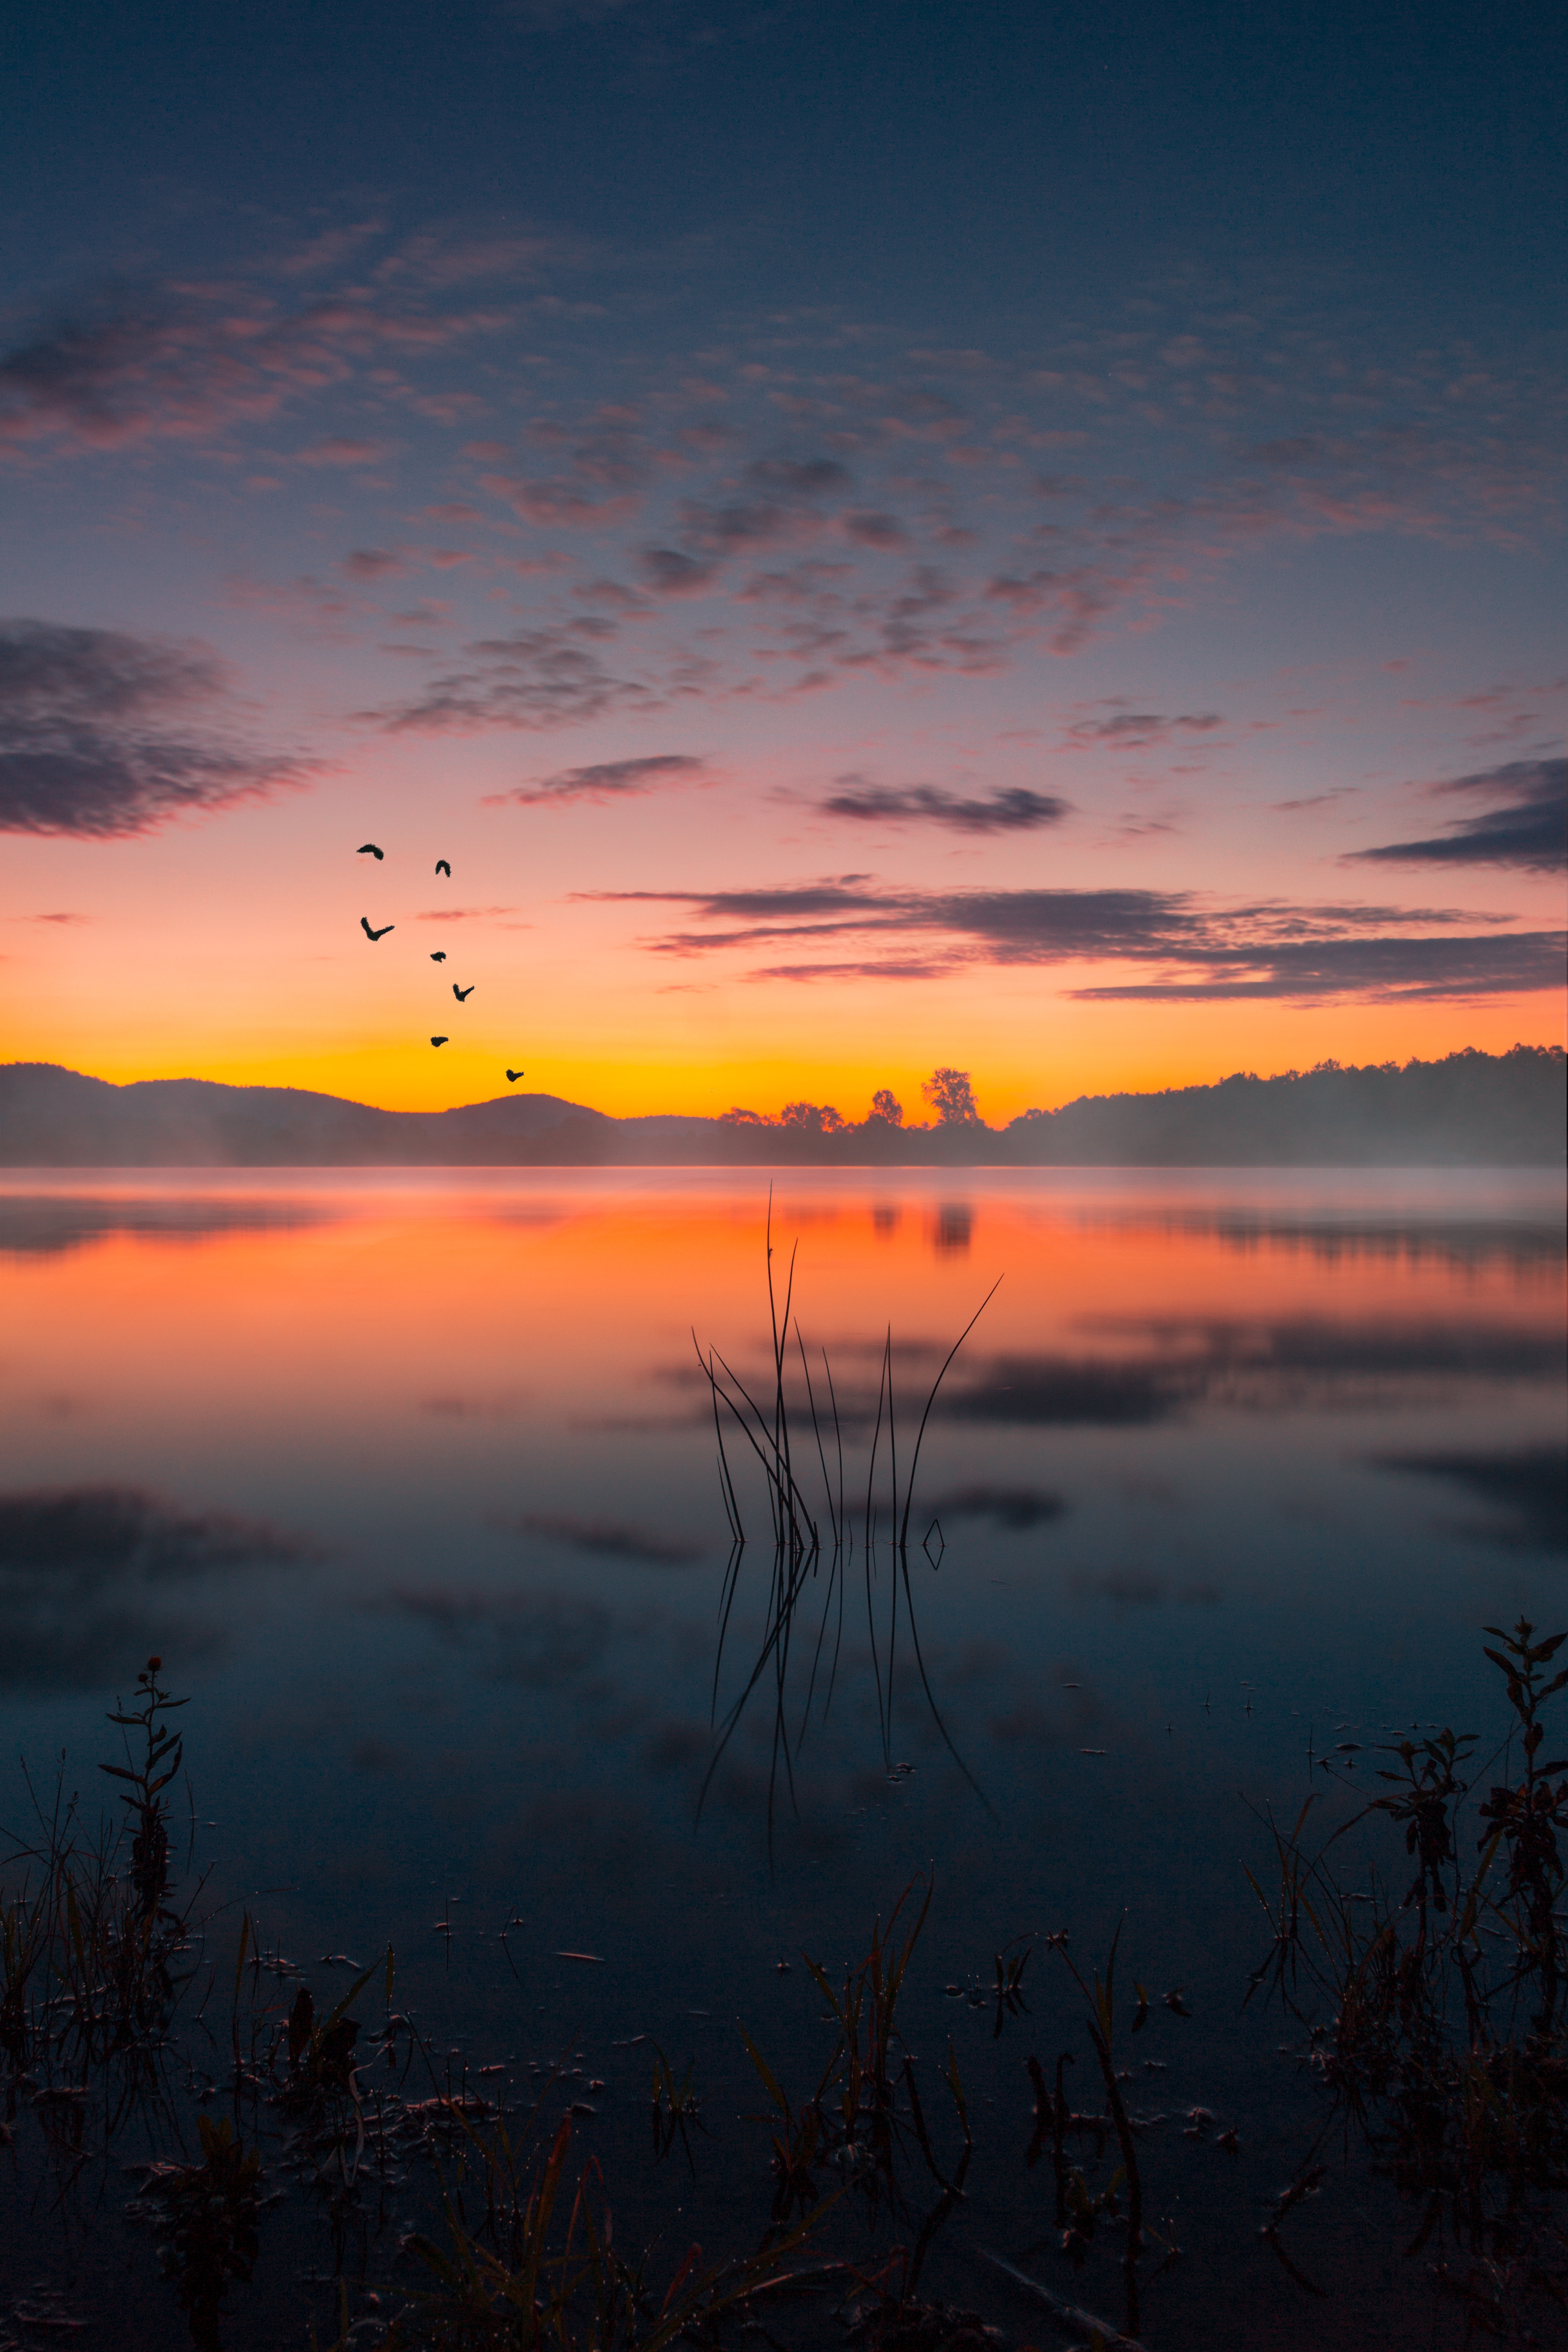 twilight, lake, landscape, nature, sunset, fog, dusk images